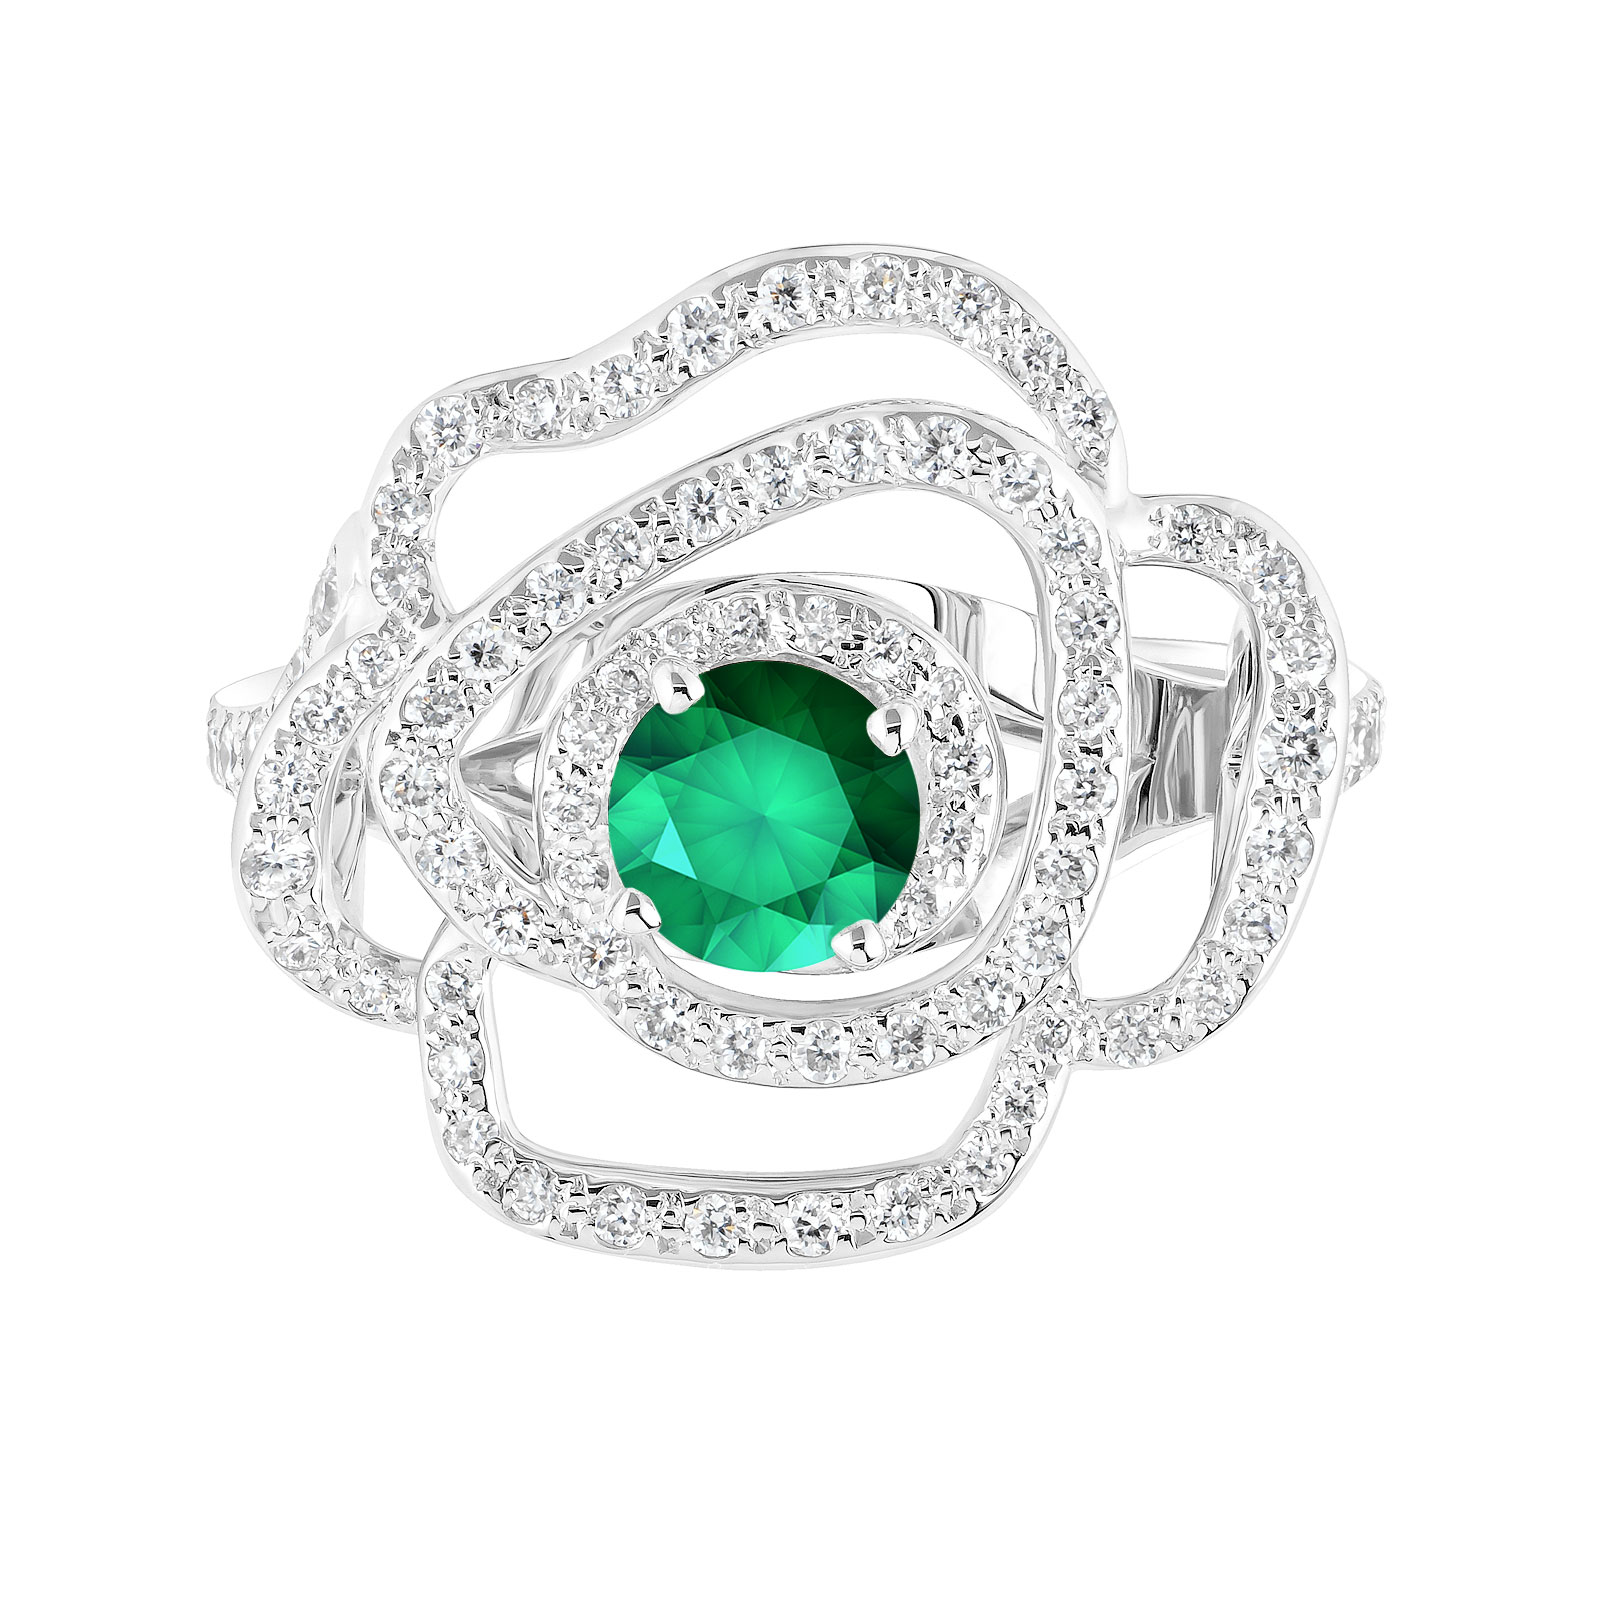 Ring White gold Emerald and diamonds PrimaRosa Alta 1